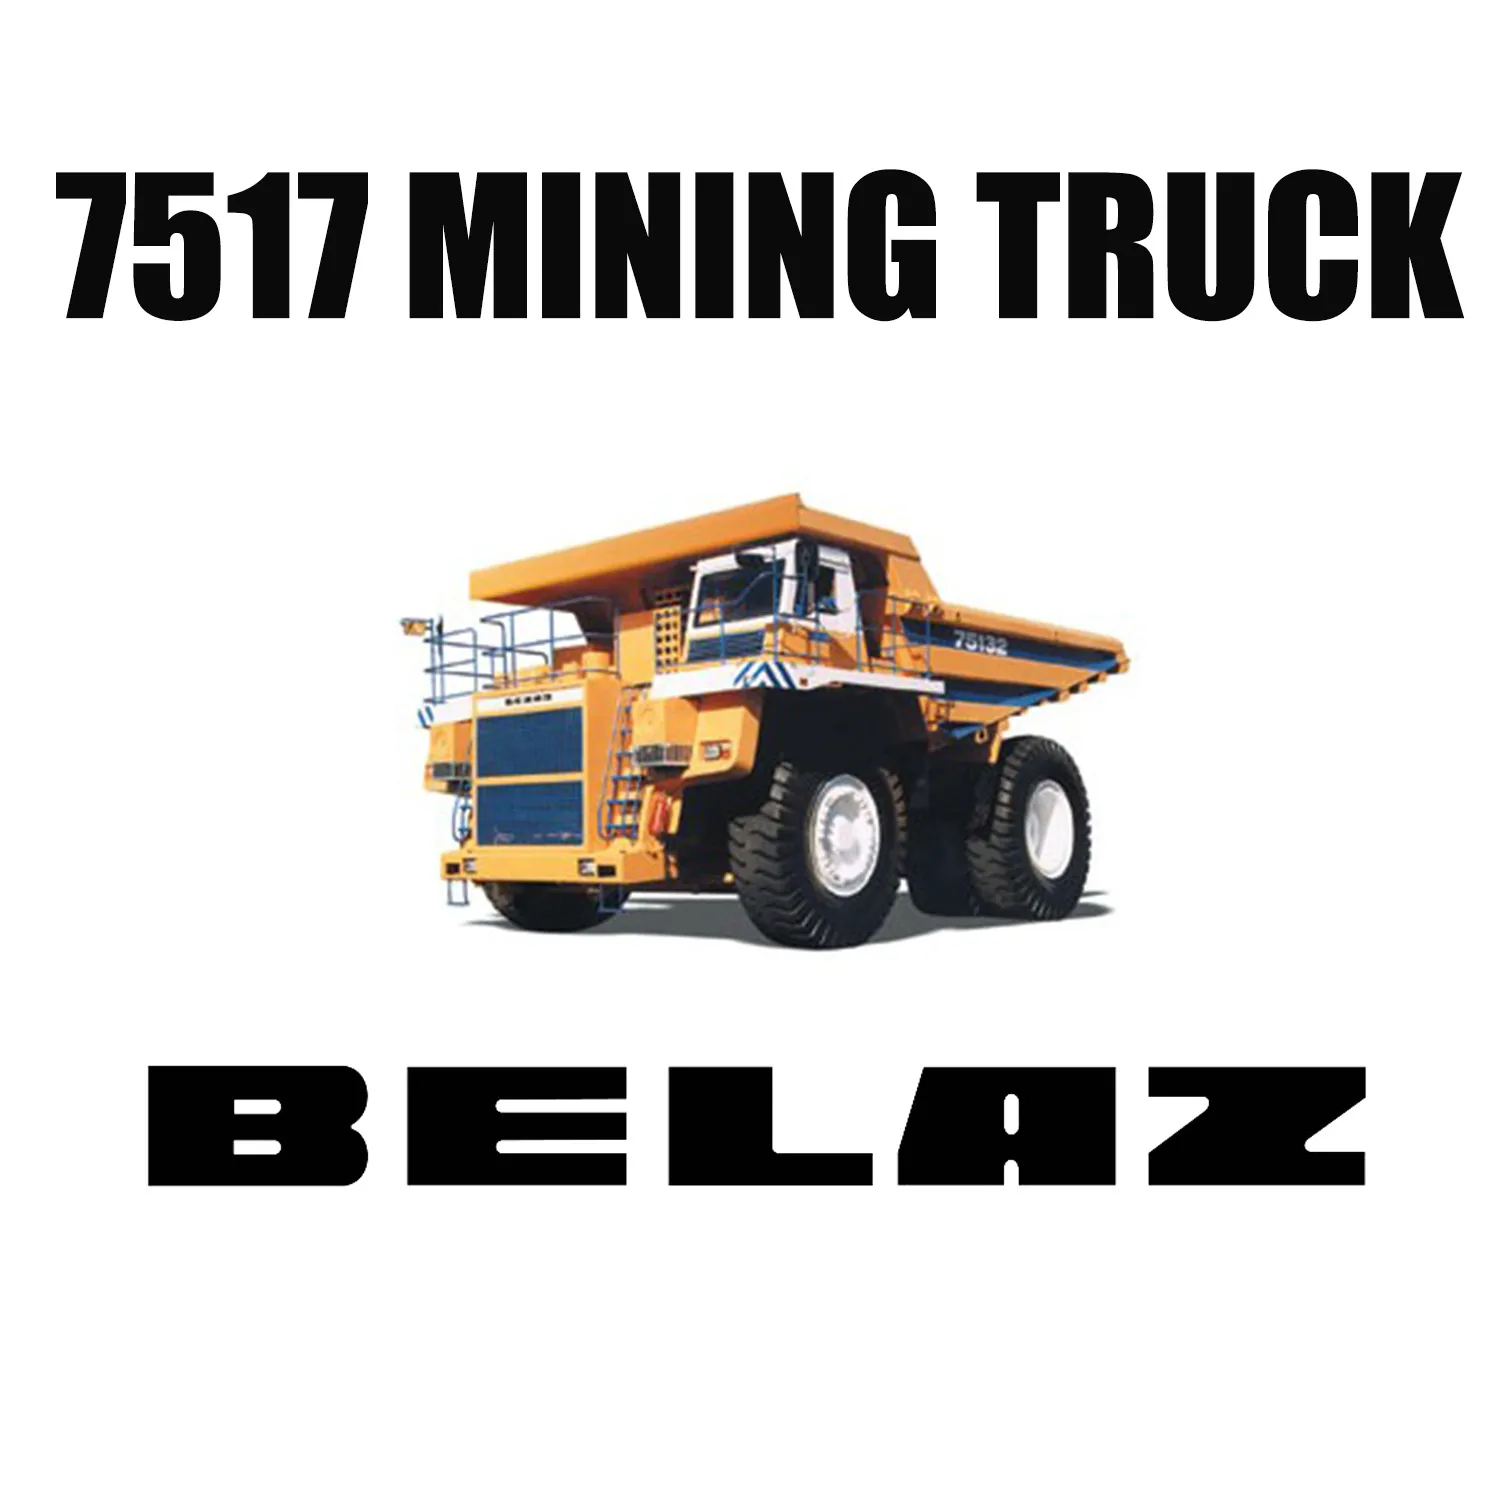 36.00R51 Kömür Madeni için BELAZ-7517'ye takılan Yol Dışı Madencilik Lastikleri